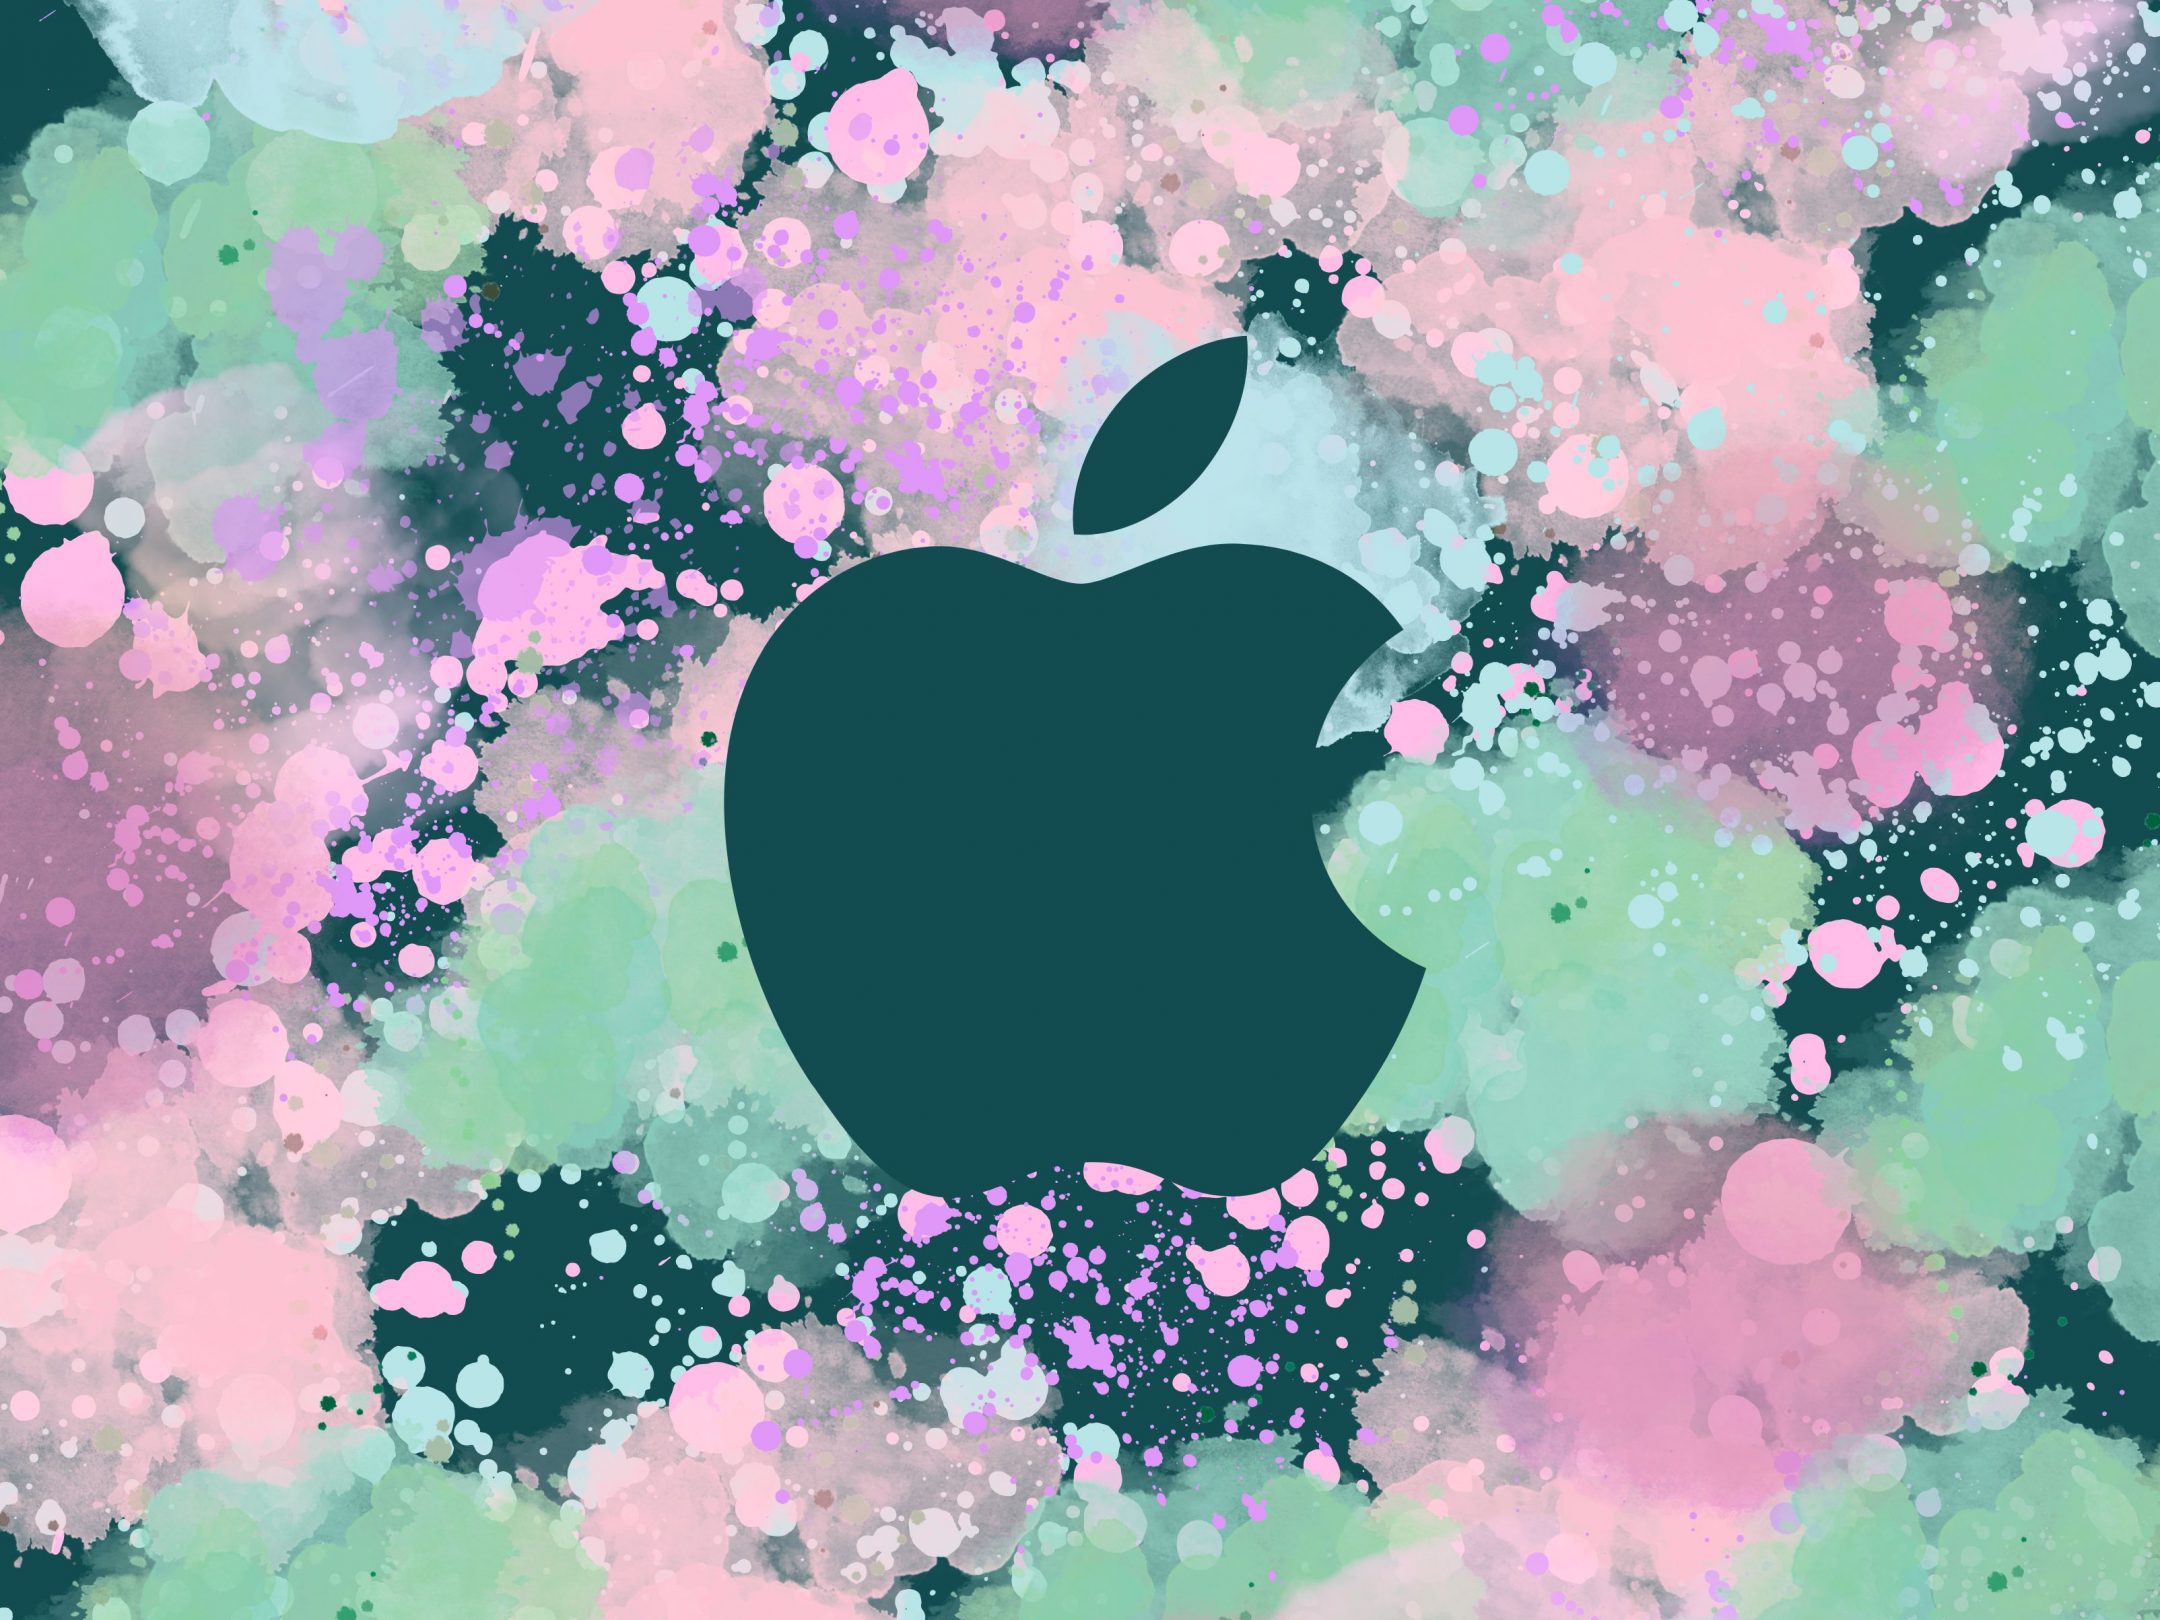 2160x1620 iPad wallpaper 4k Pastel Watercolour Apple Ipad Wallpaper 2160x1620 pixels resolution